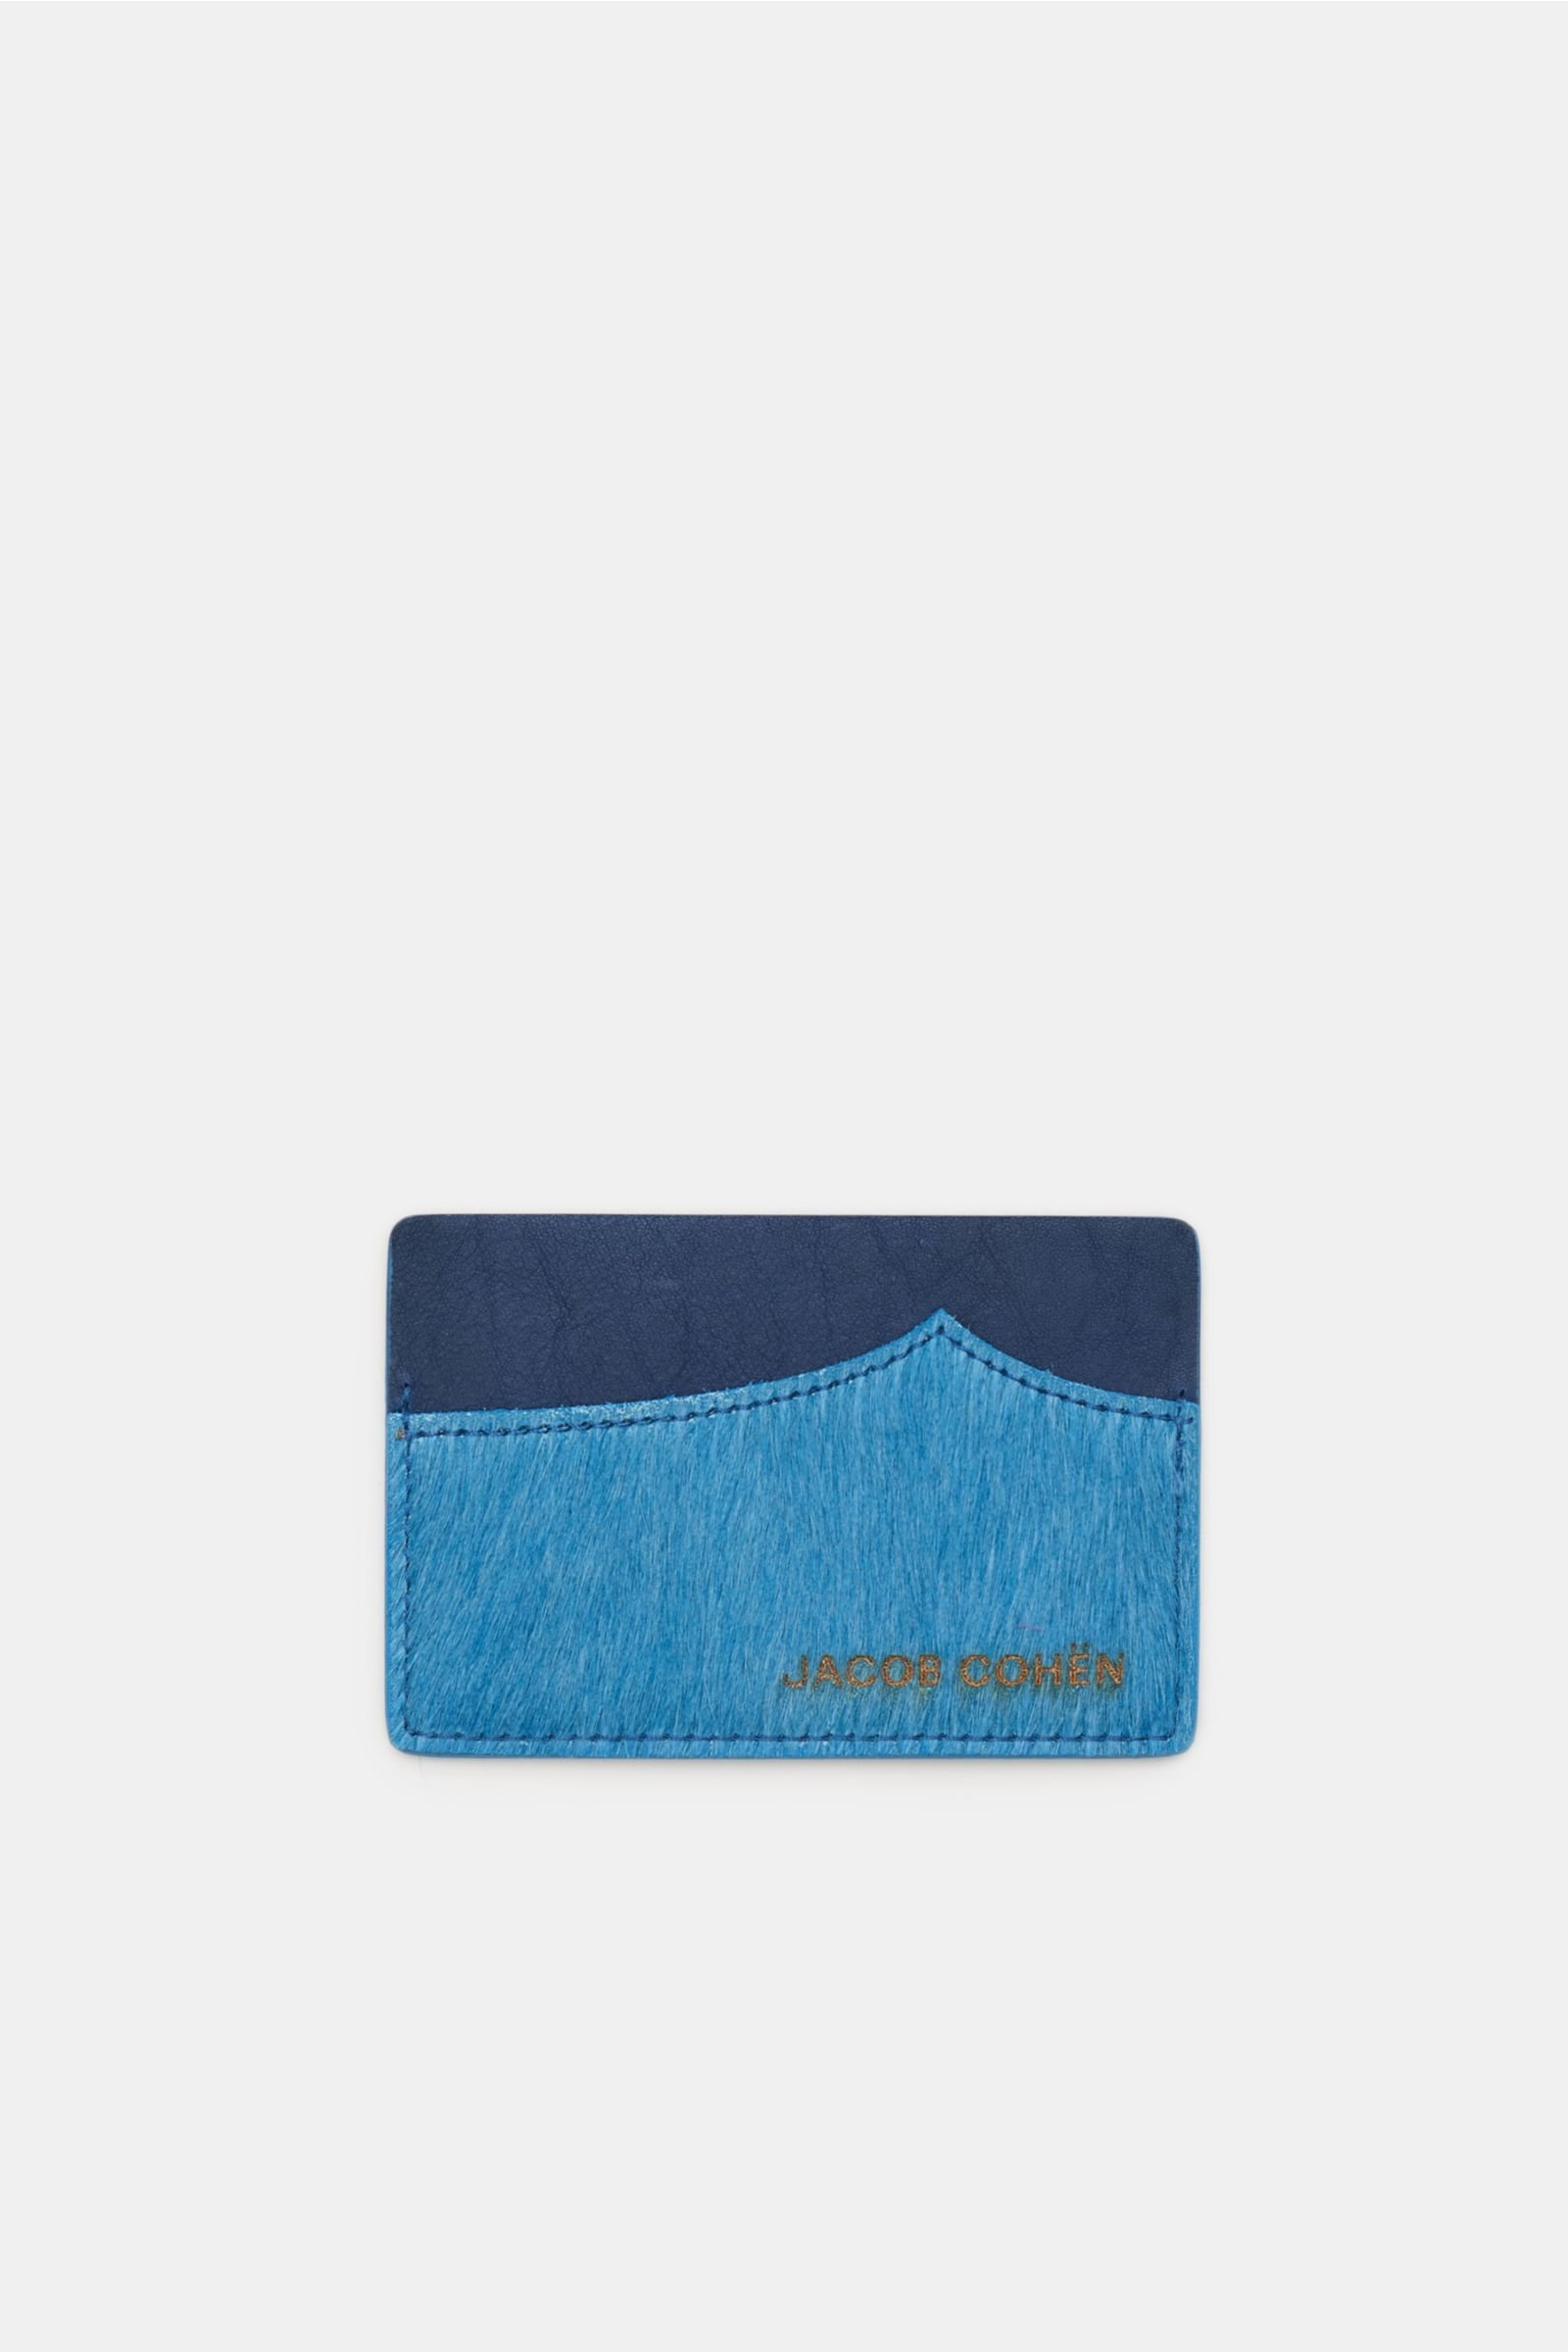 Credit card holder teal